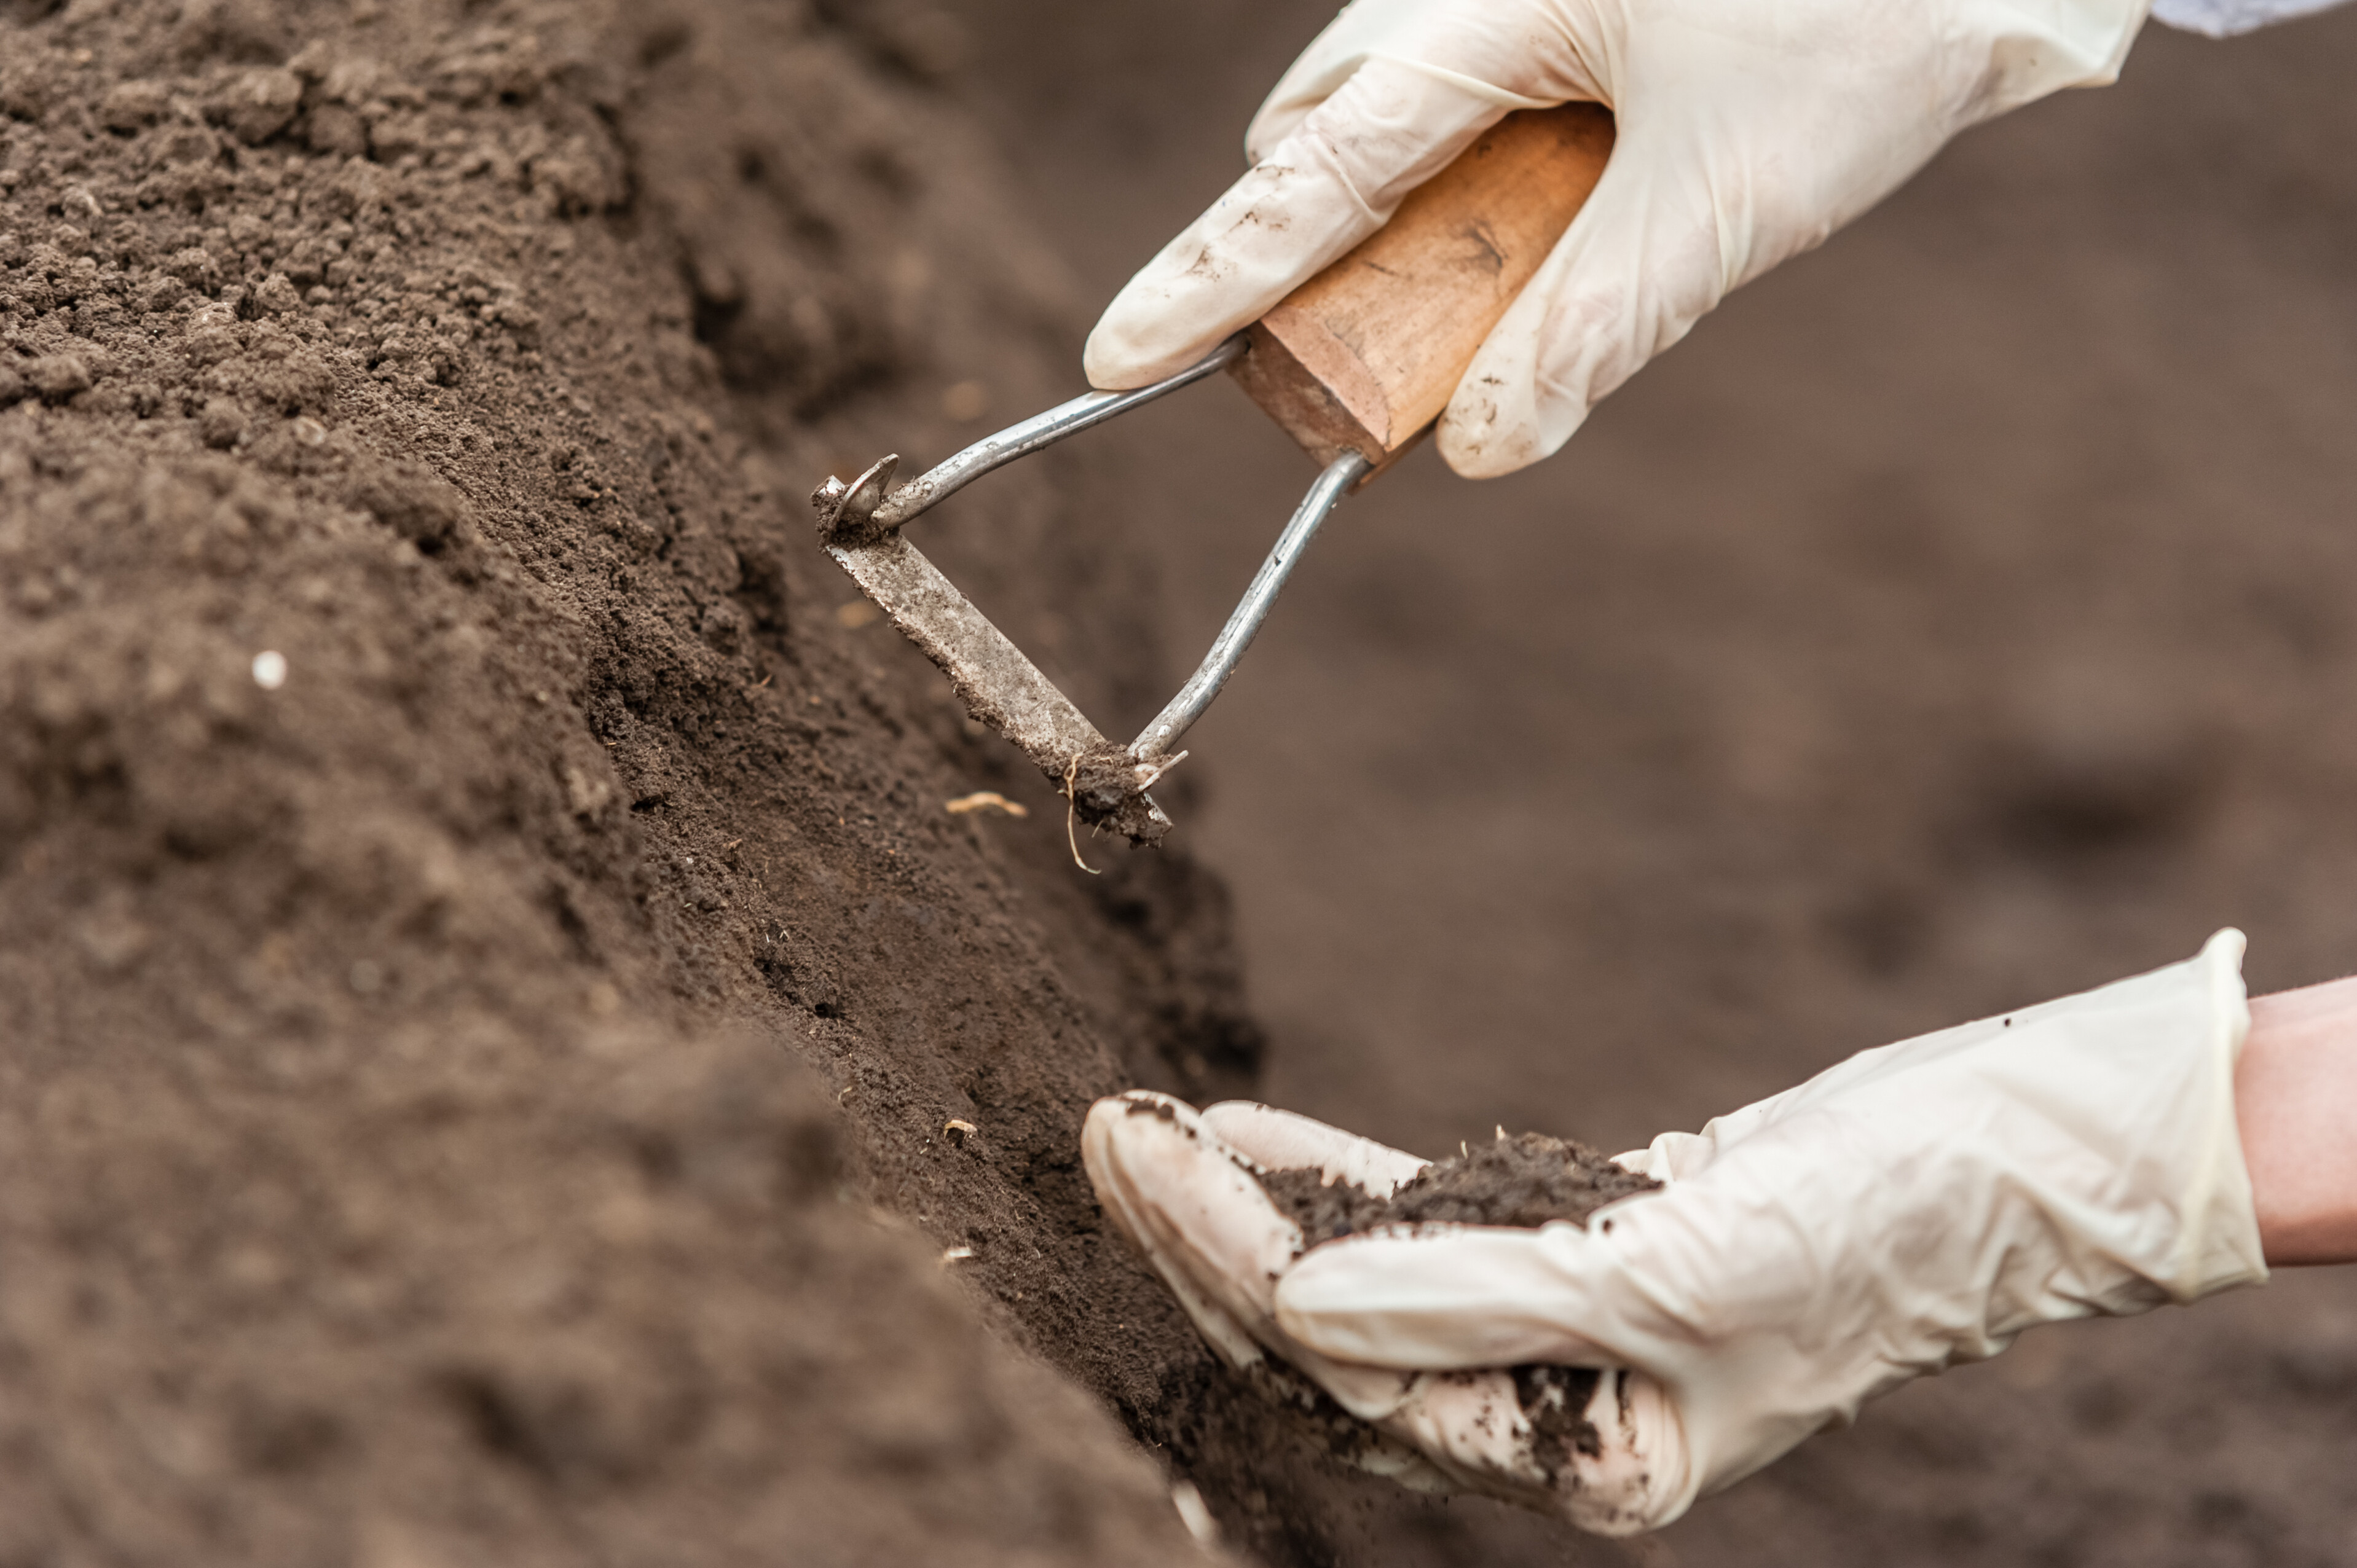 A imagem mostra uma mão com luvas brancas extraindo amostra de solo.